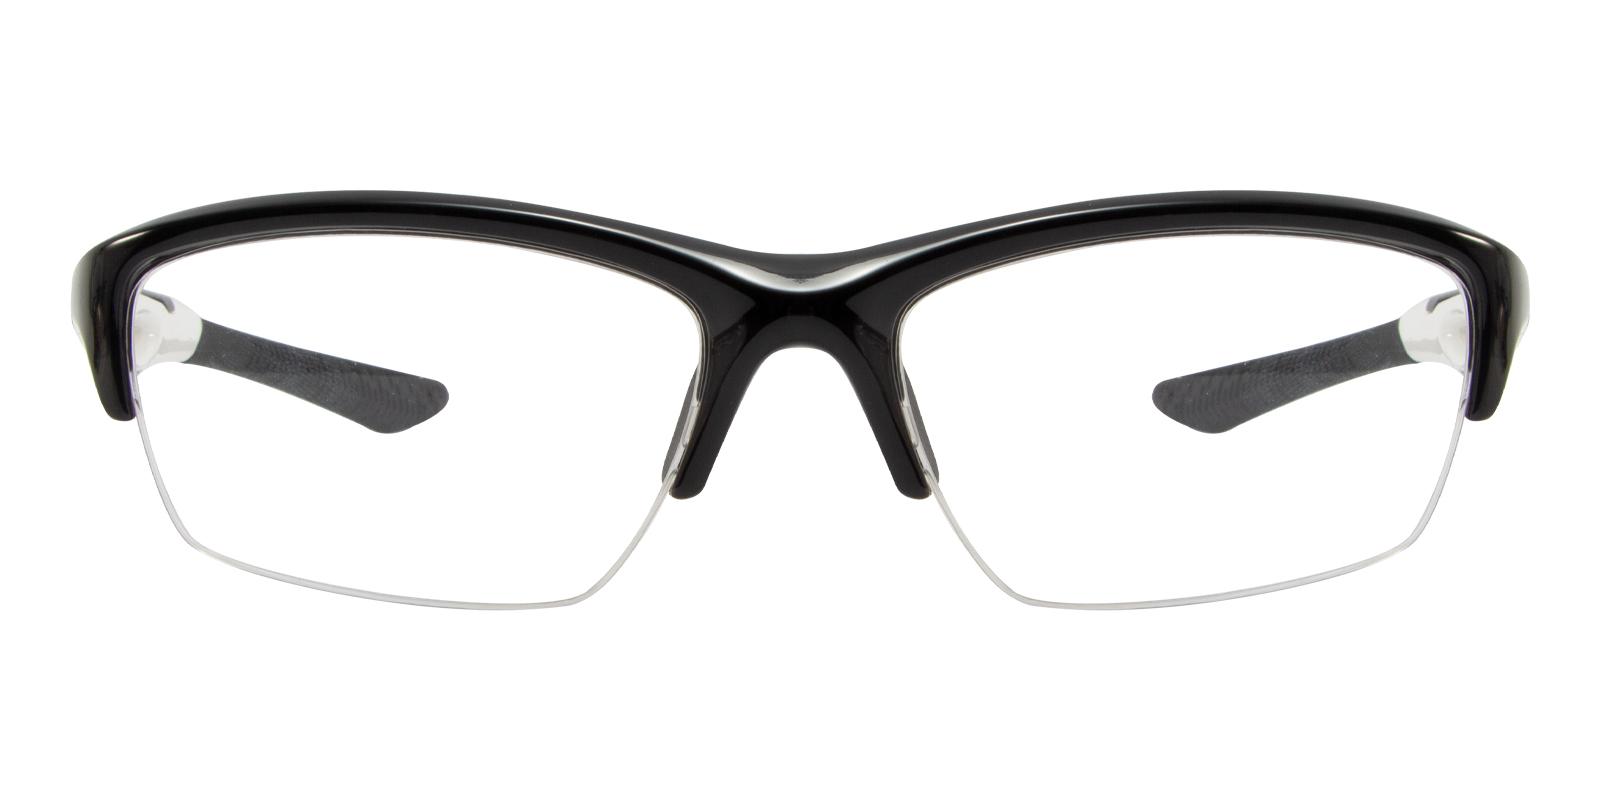 Viking White TR NosePads , SportsGlasses Frames from ABBE Glasses